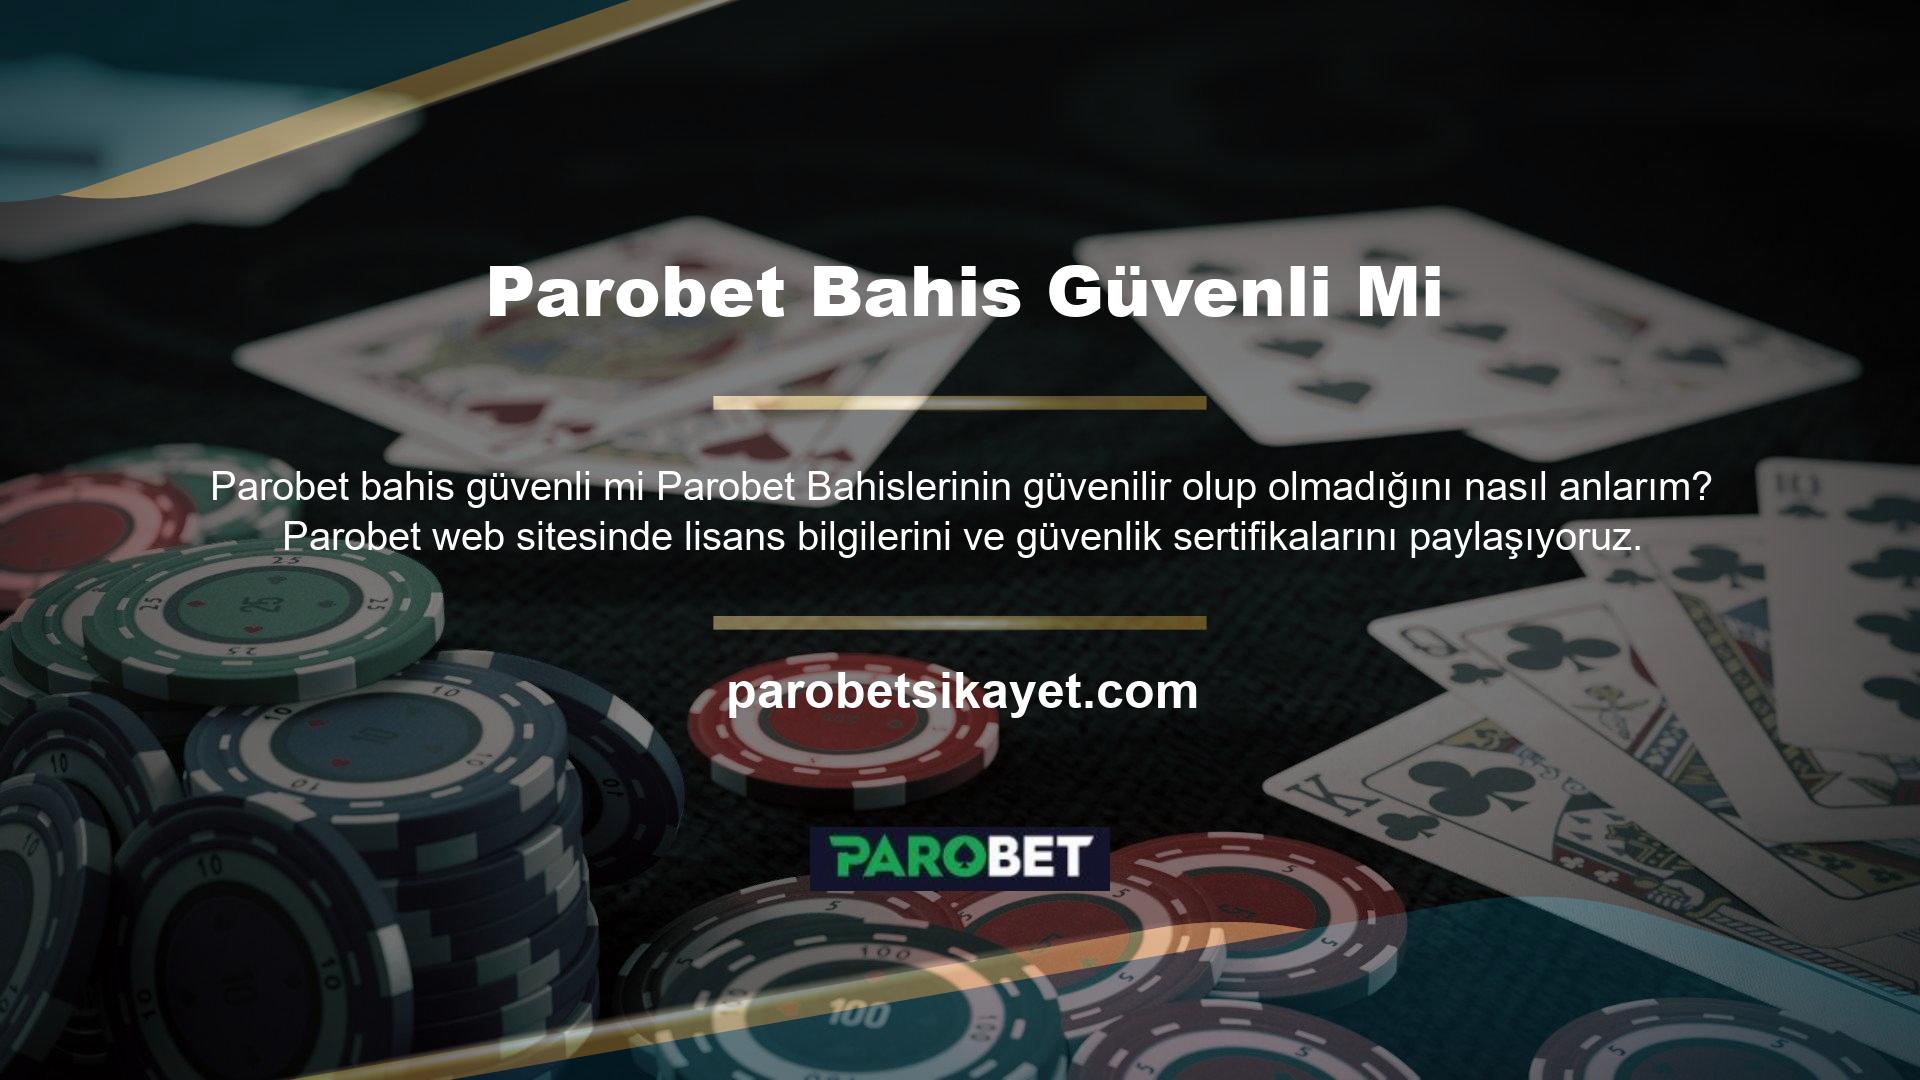 Parobet bonusları ve etkinlikleri birçok Parobet üyesi arasında popülerdir